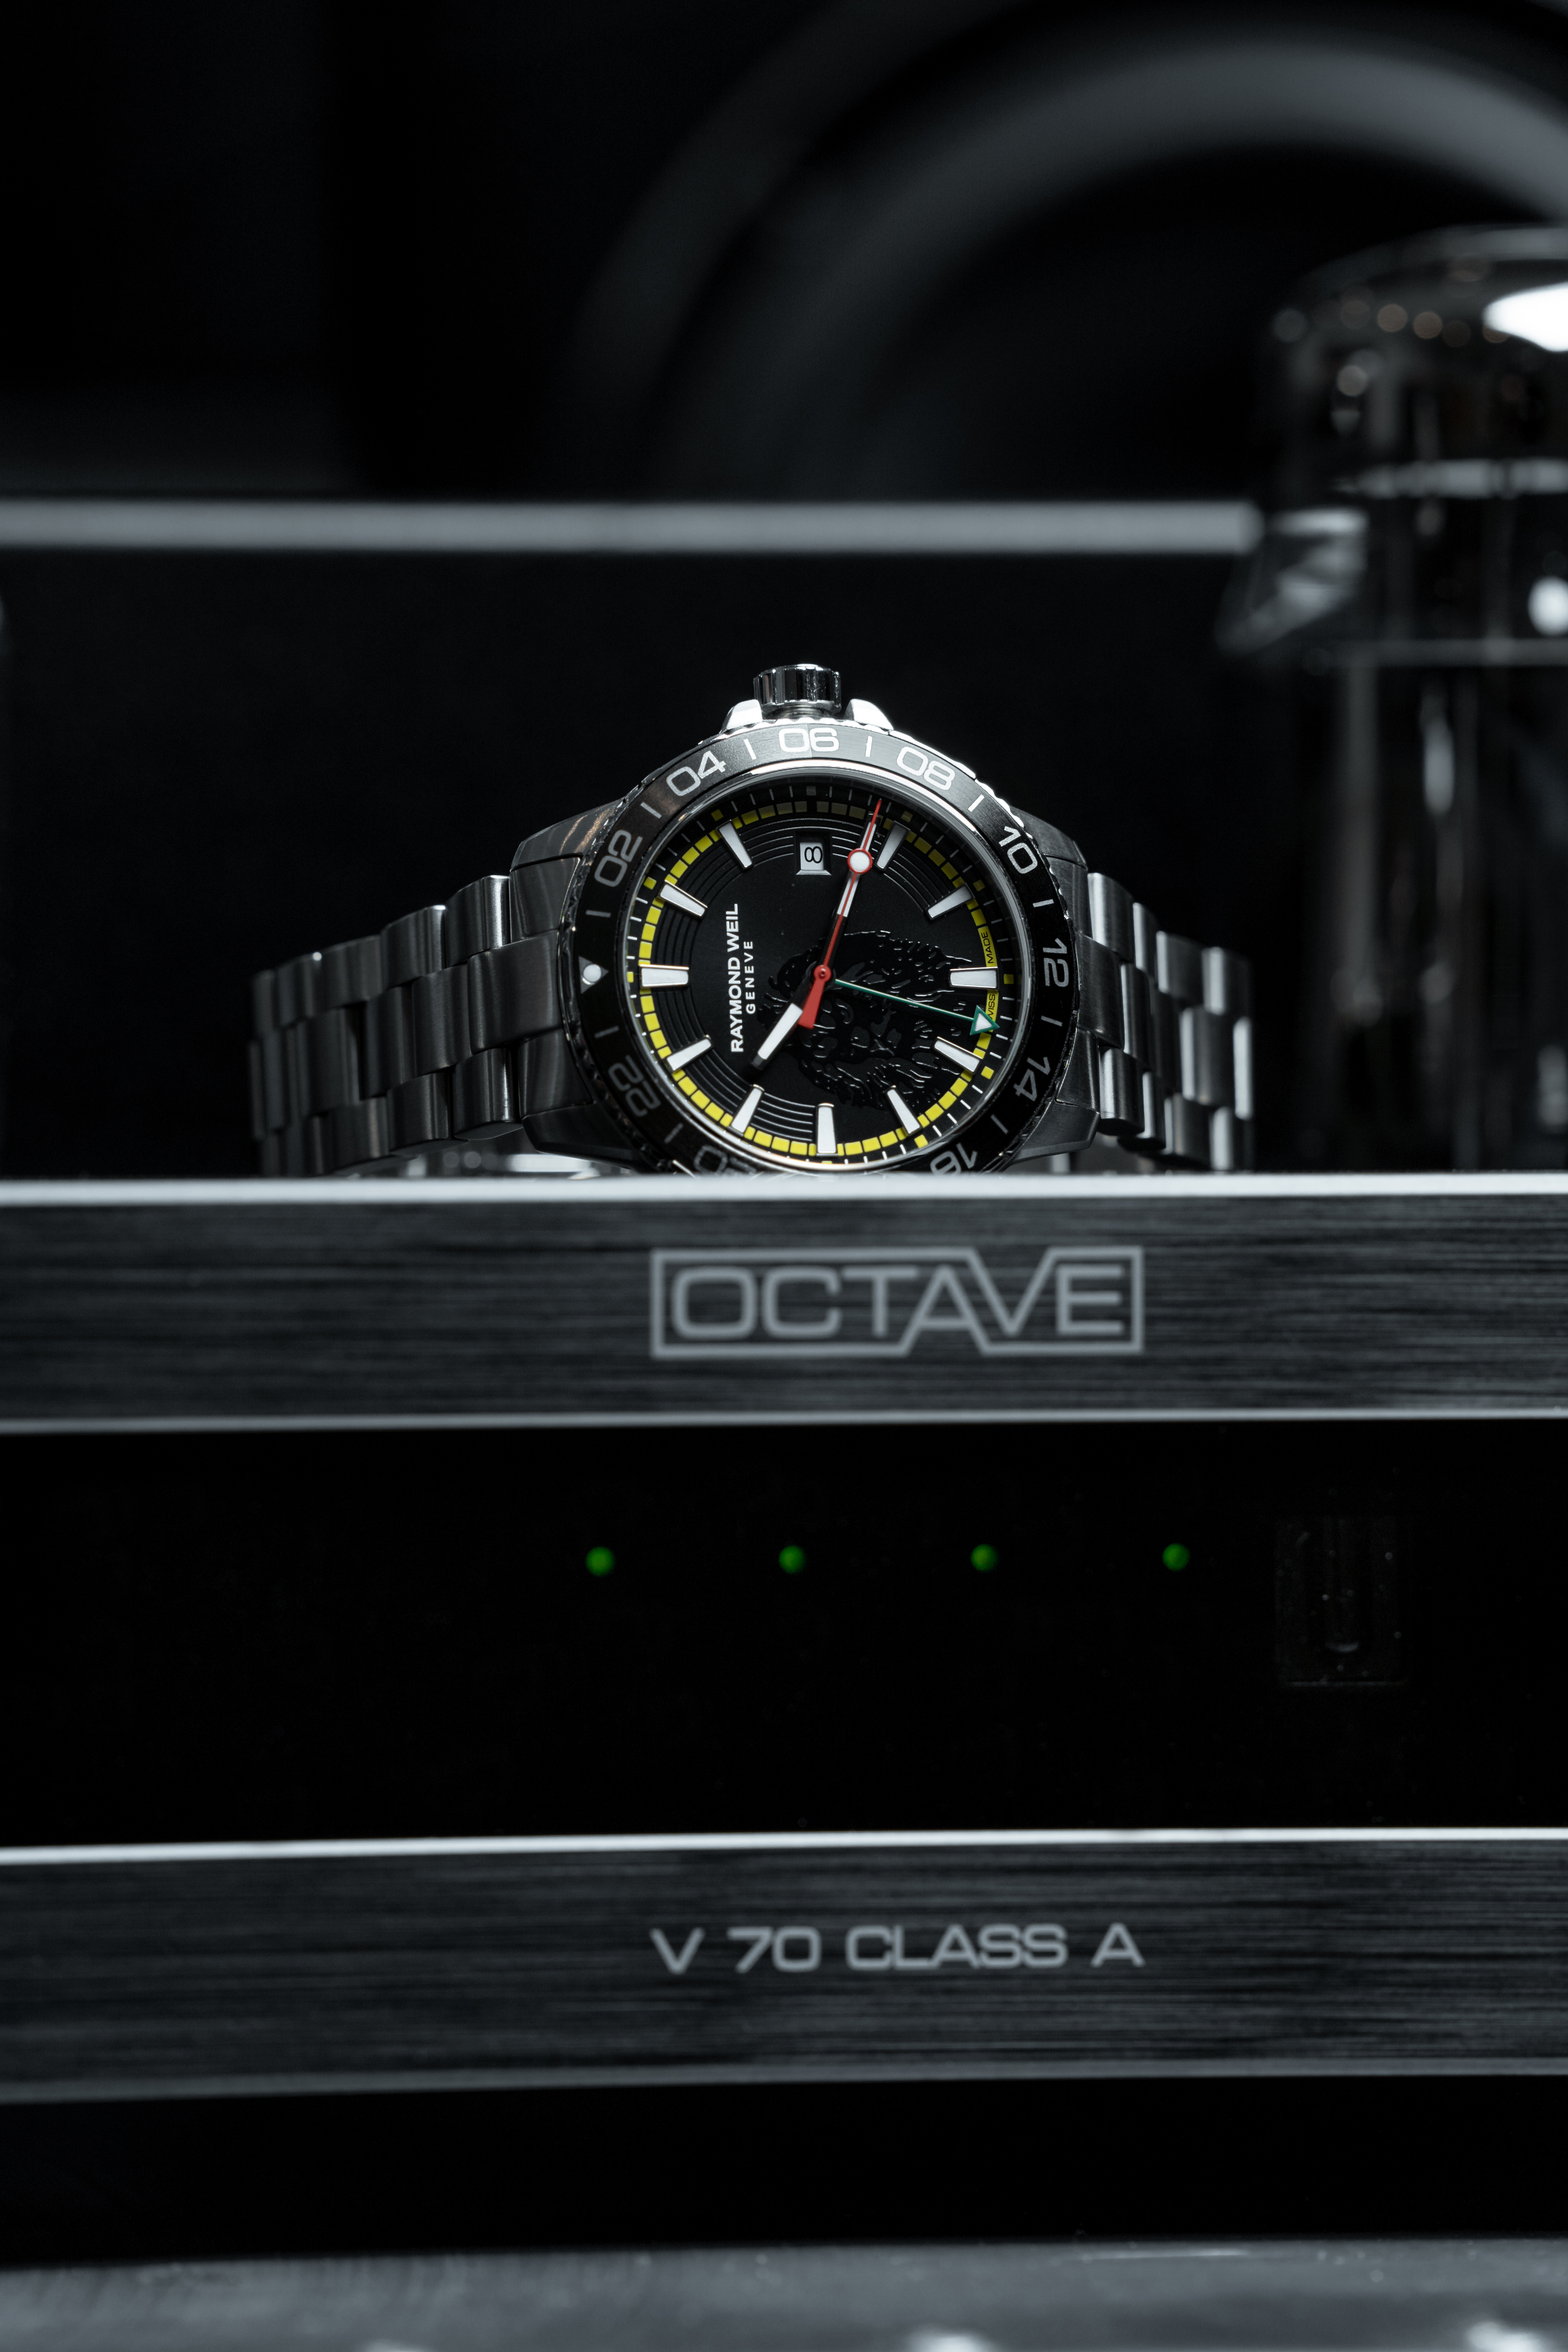 Часы в антураже лампового усилителя Octave V 70 Class A